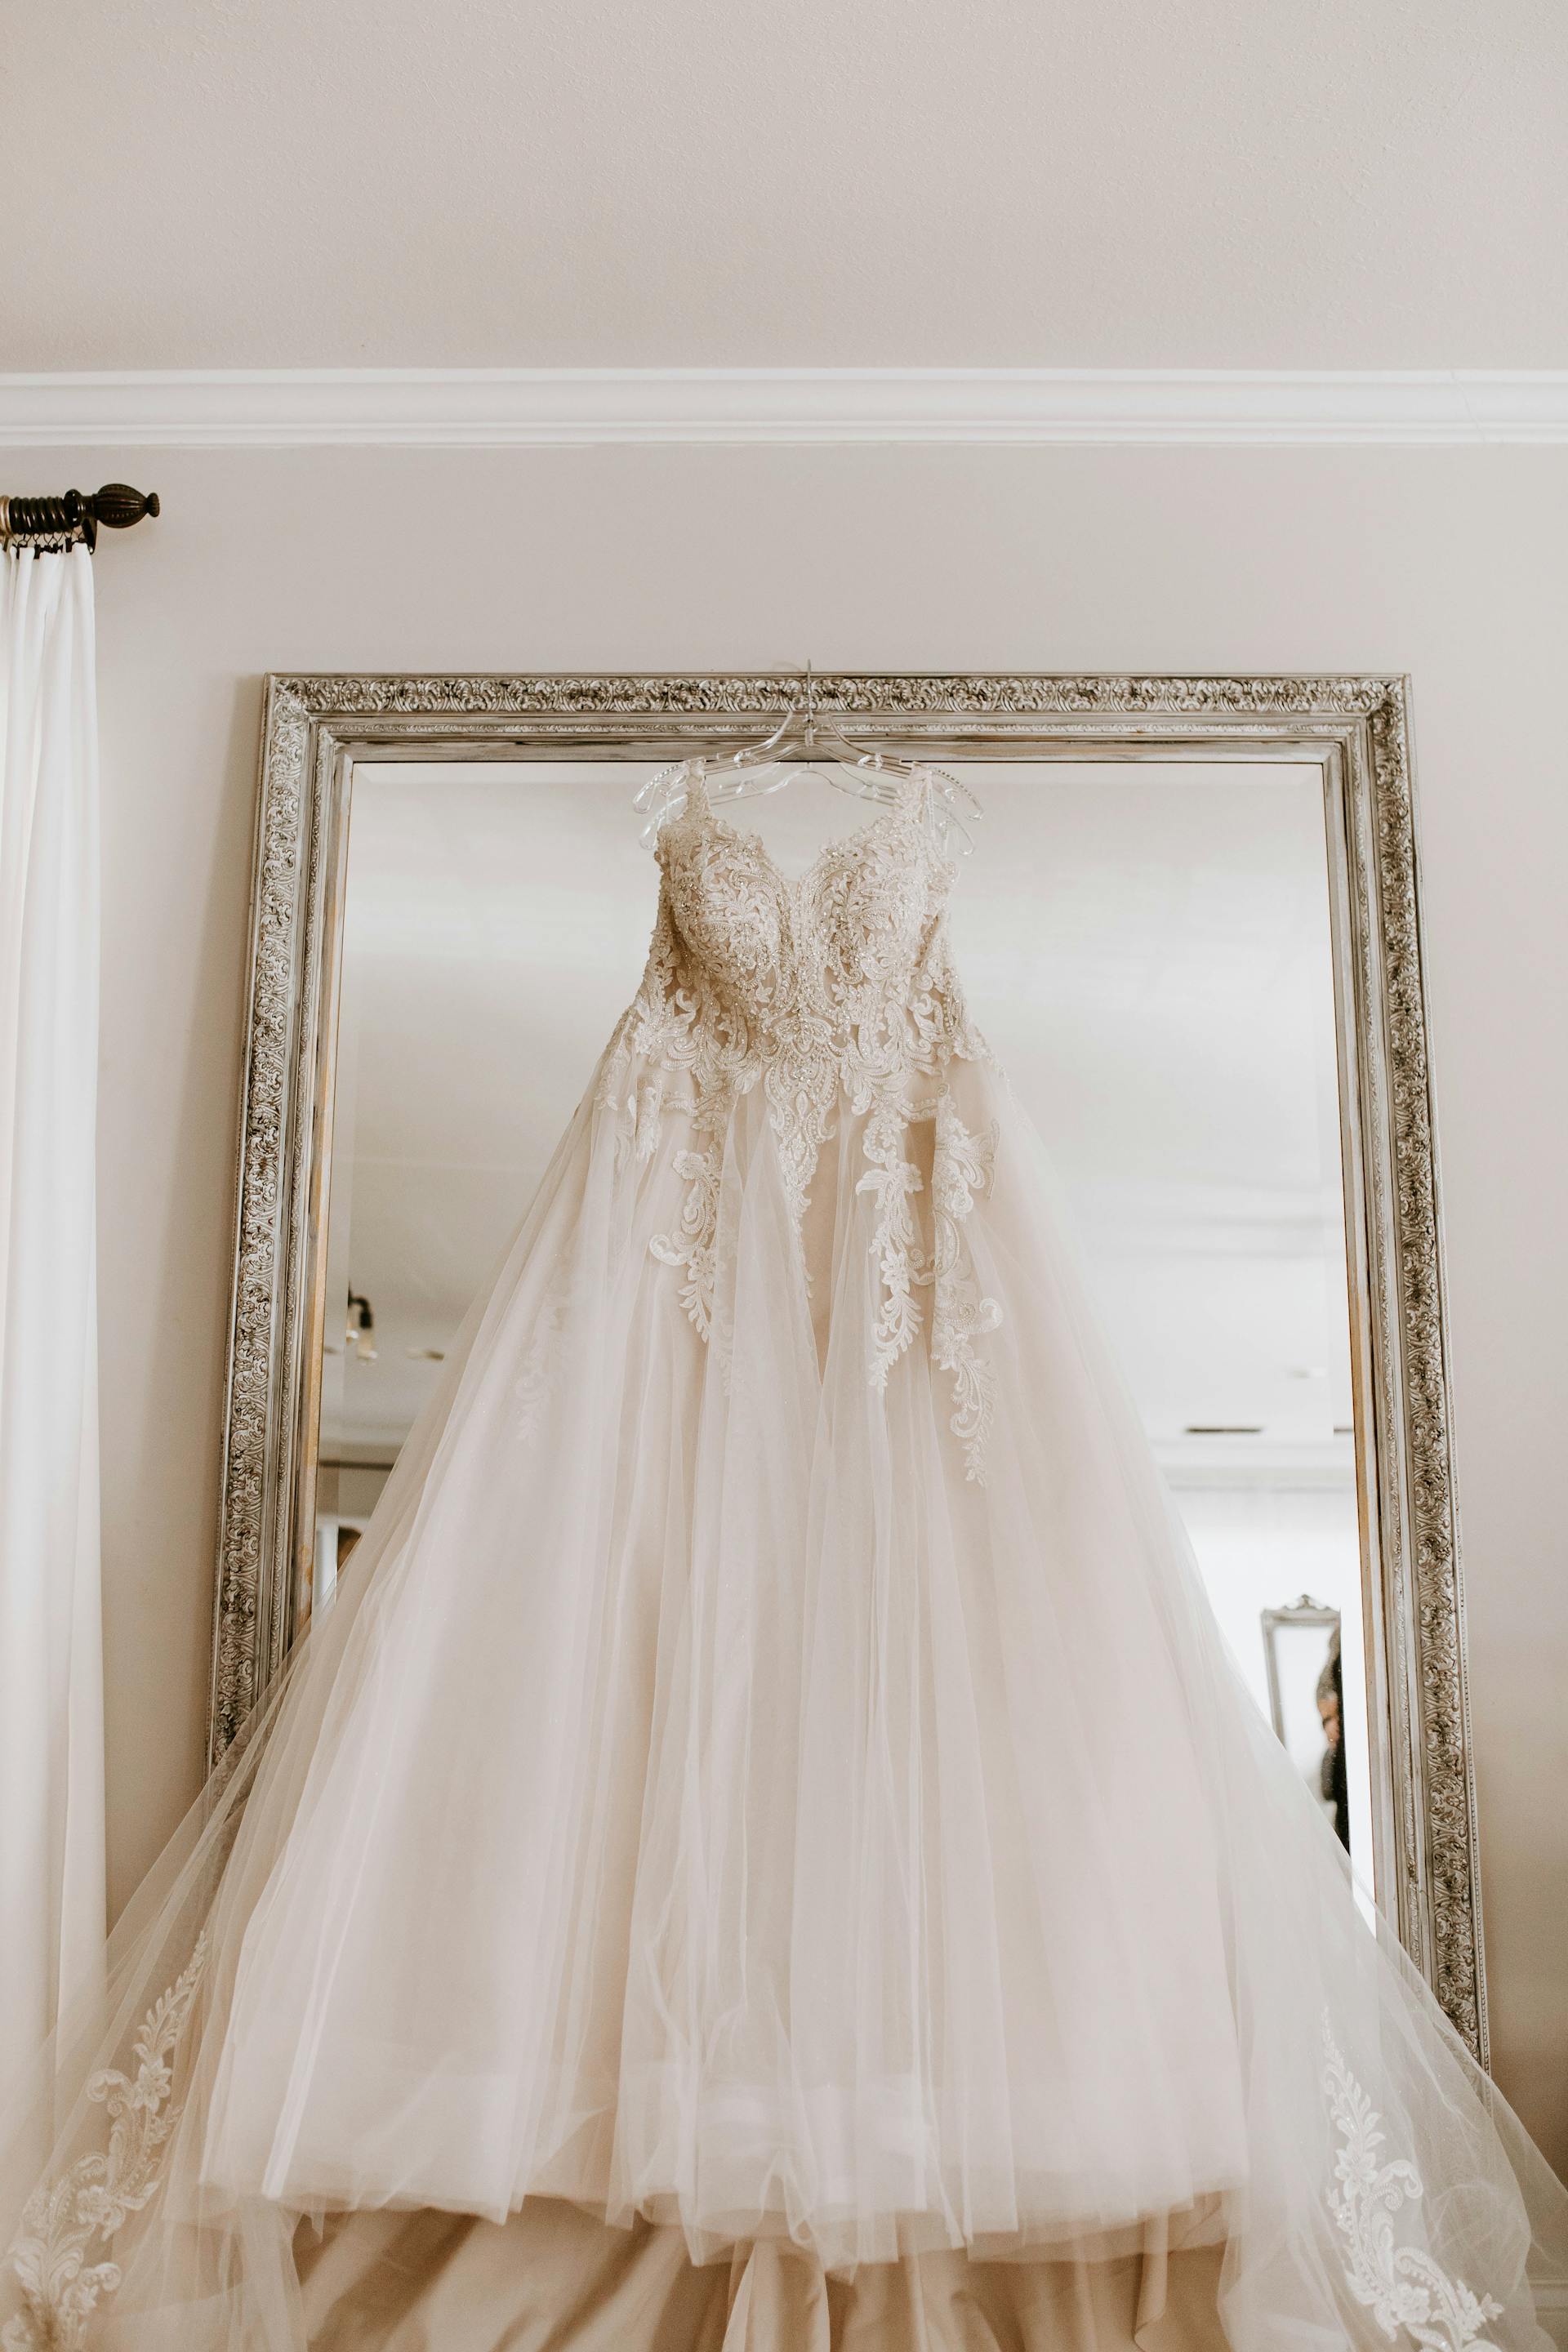 Une robe de mariée suspendue | Source : Pexels